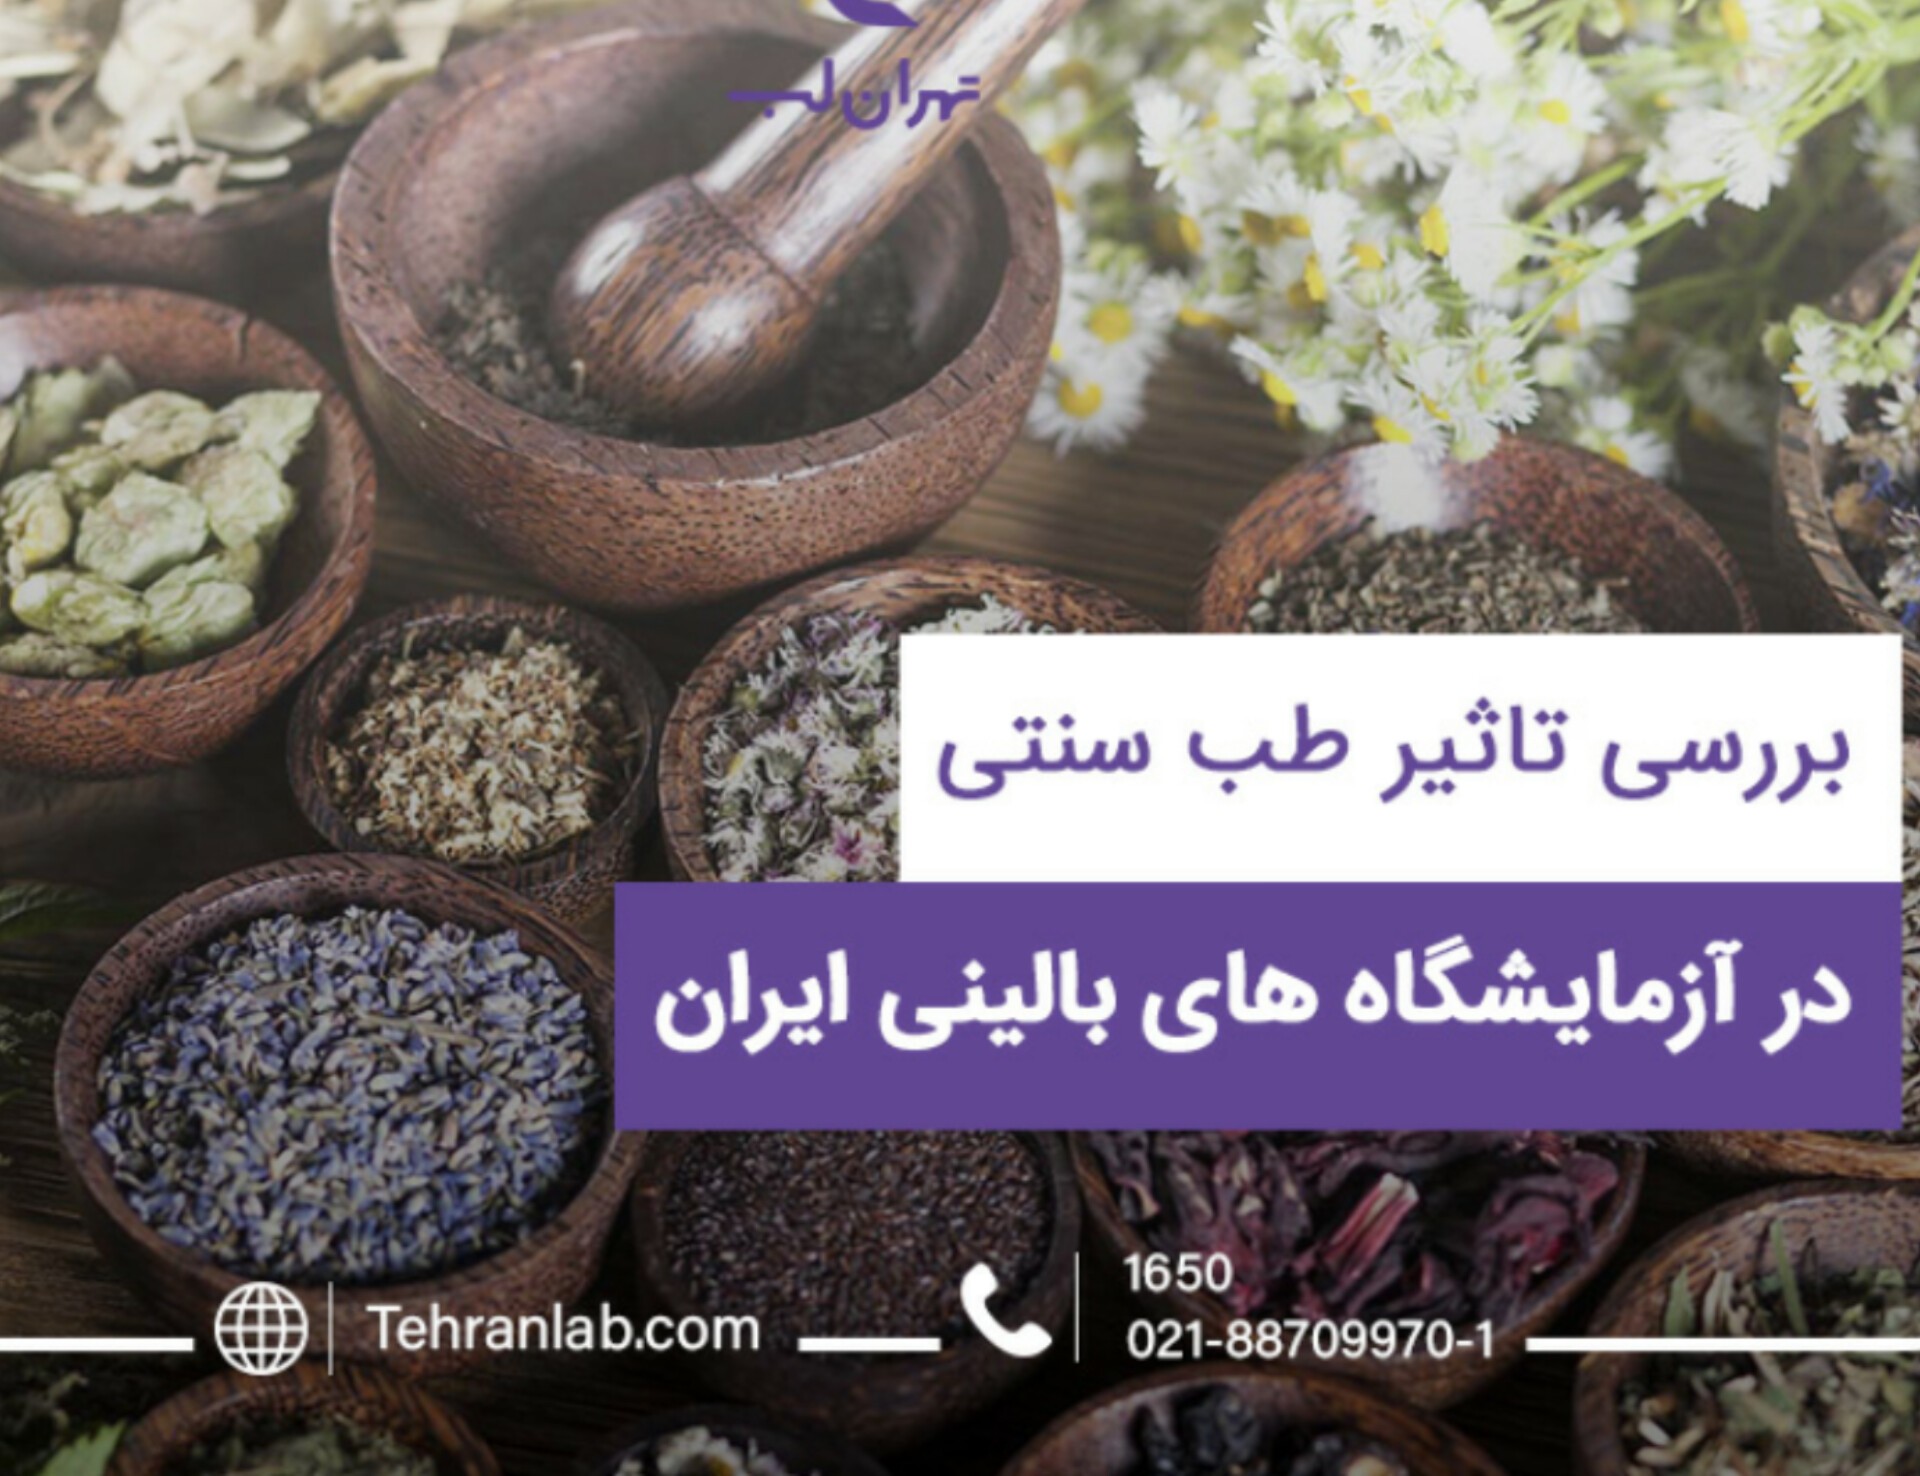 بررسی میزان محبوبیت طب سنتی و پزشکی نوین در ایران